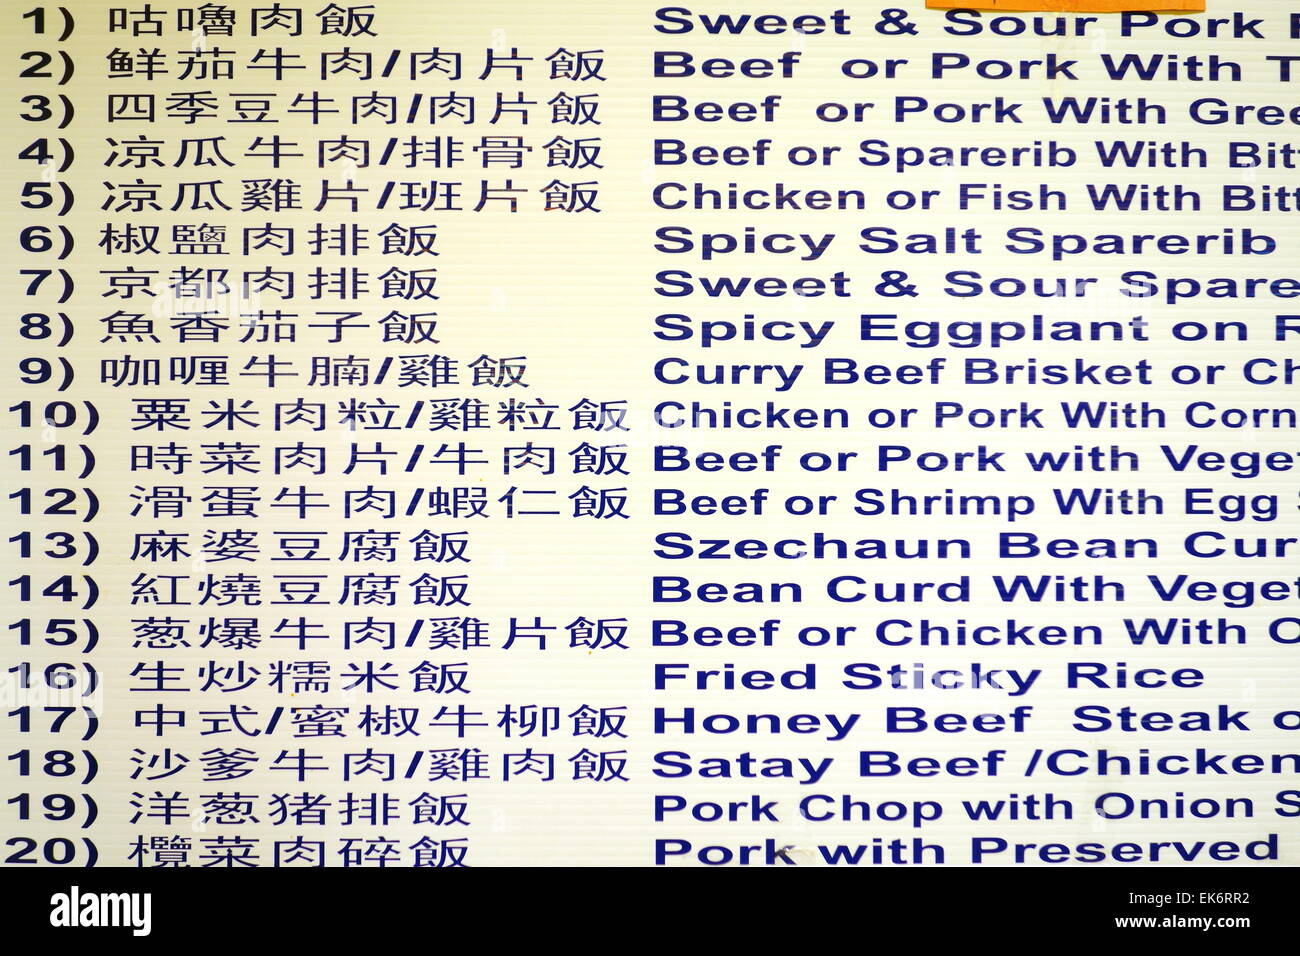 Chinese restaurant menu Stock Photo